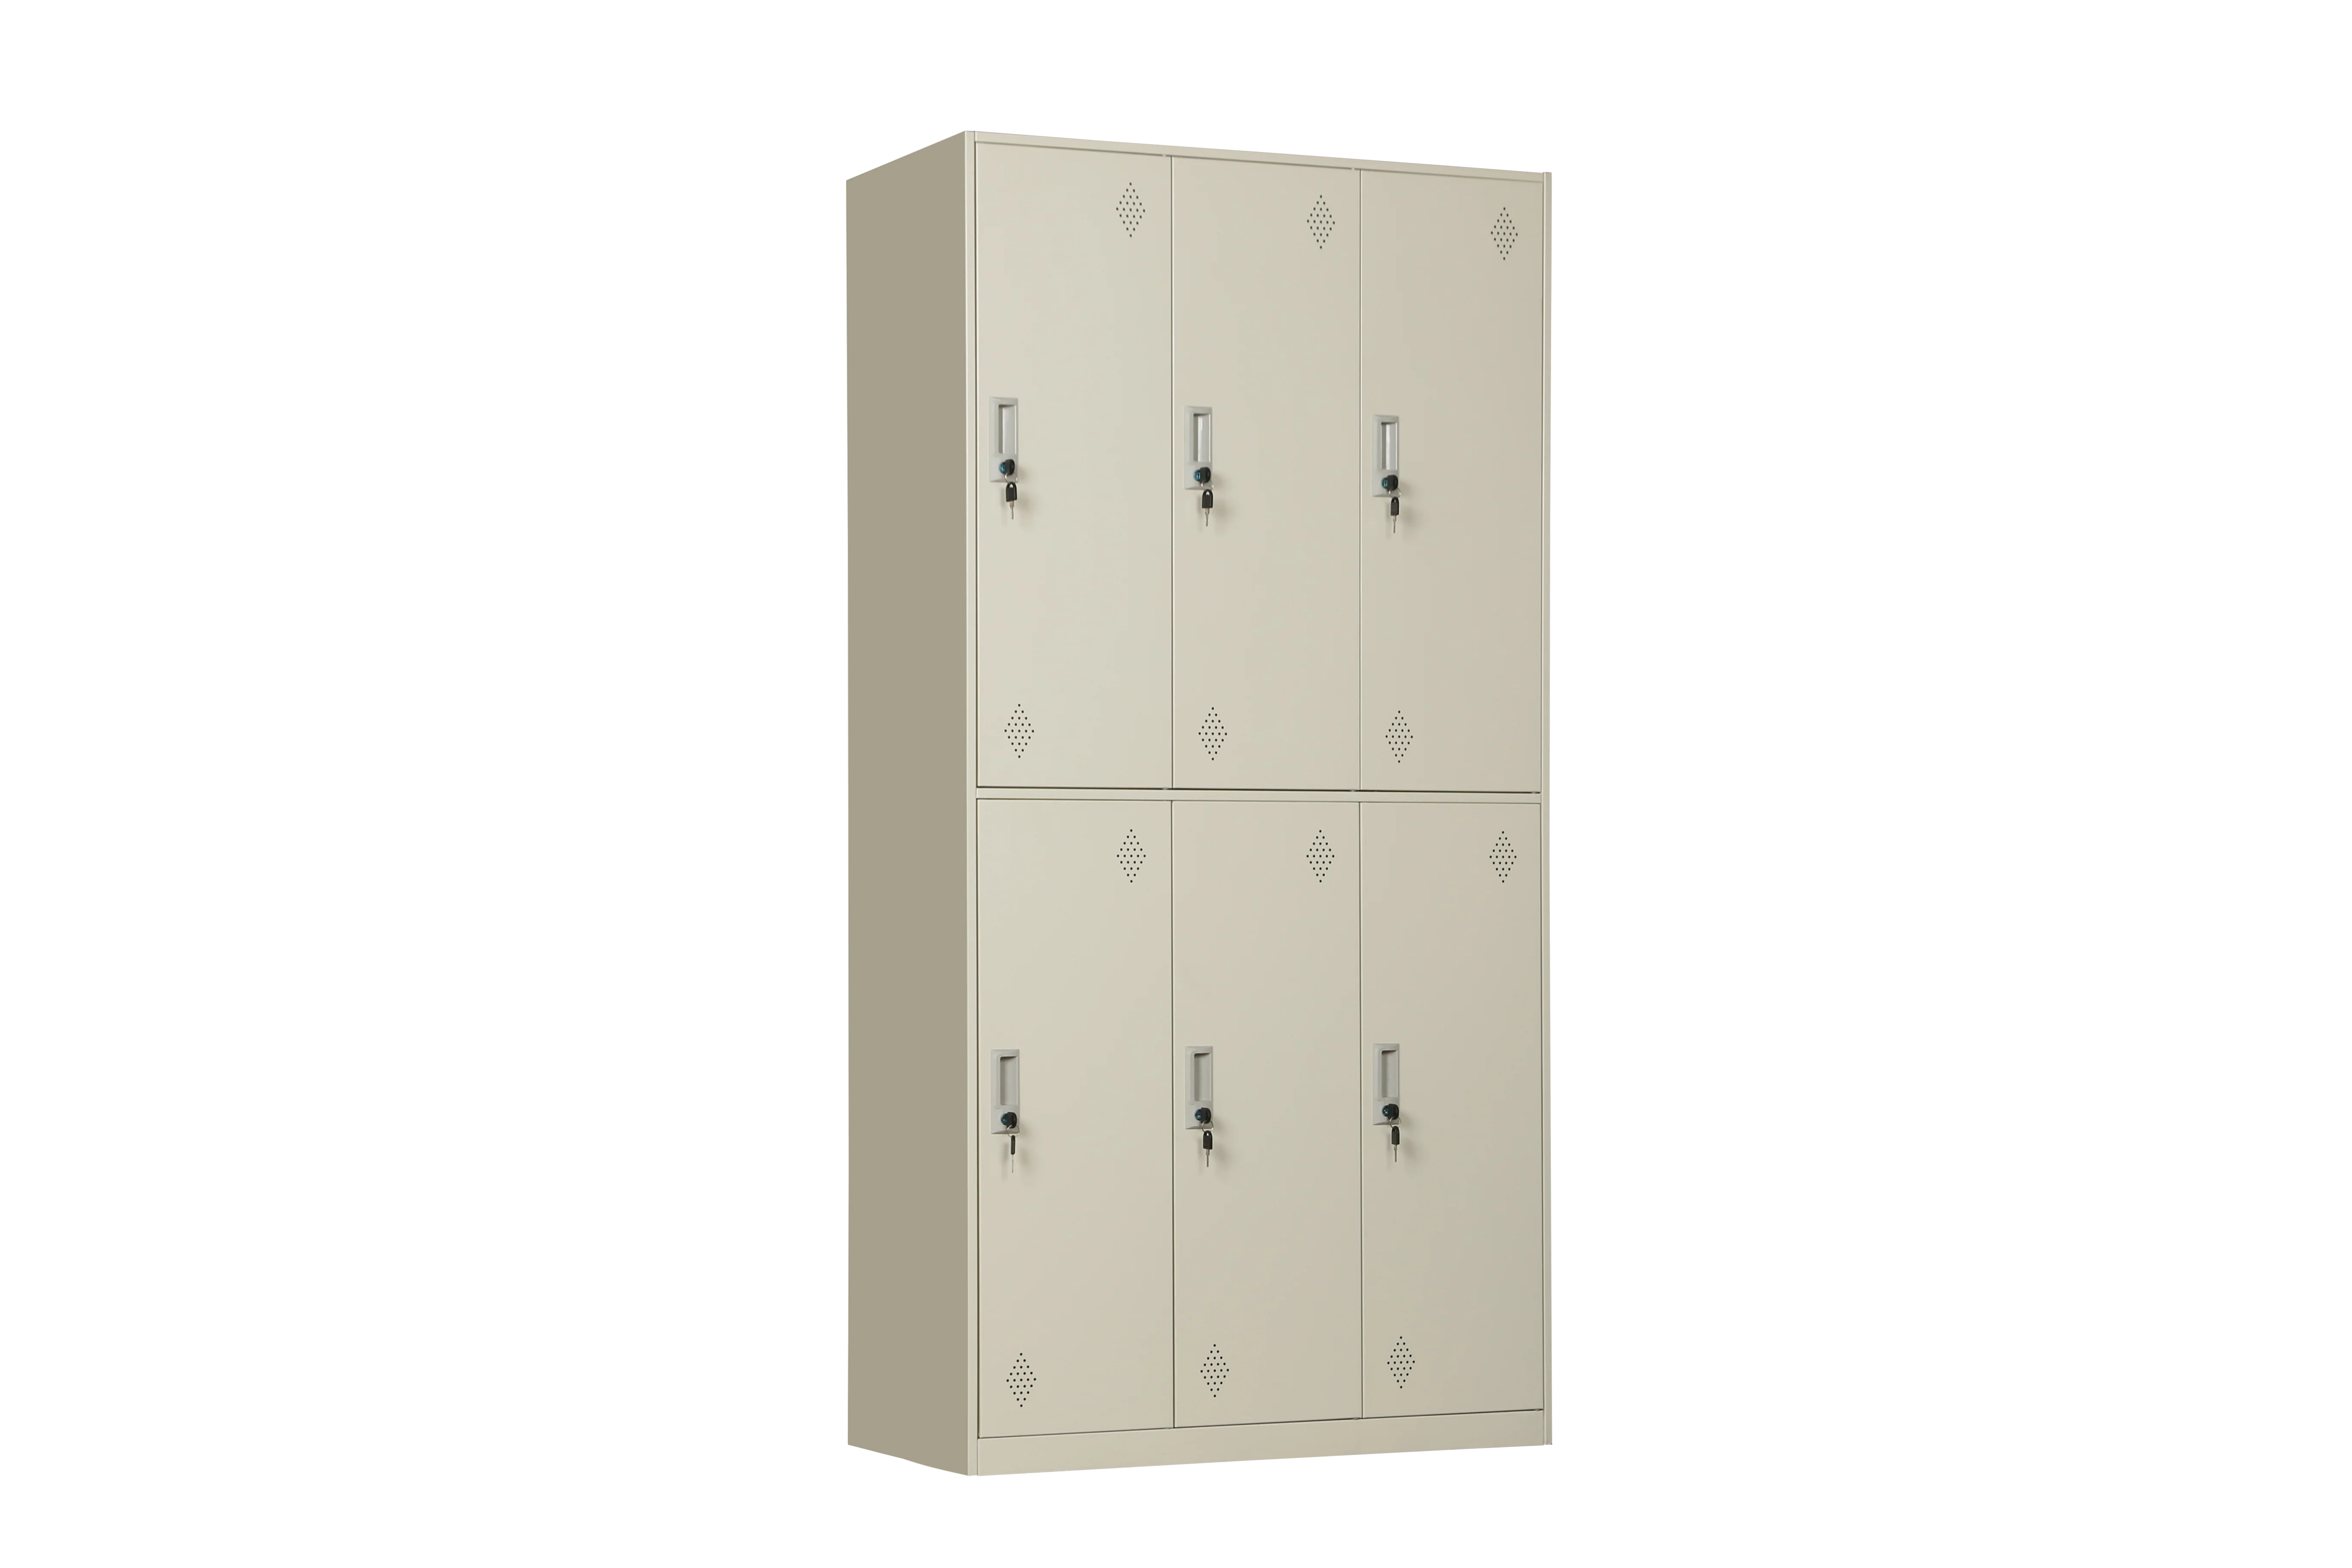 6 Door Metal Locker Steel Storage Cabinet Six Doors Clothes Wardrobe